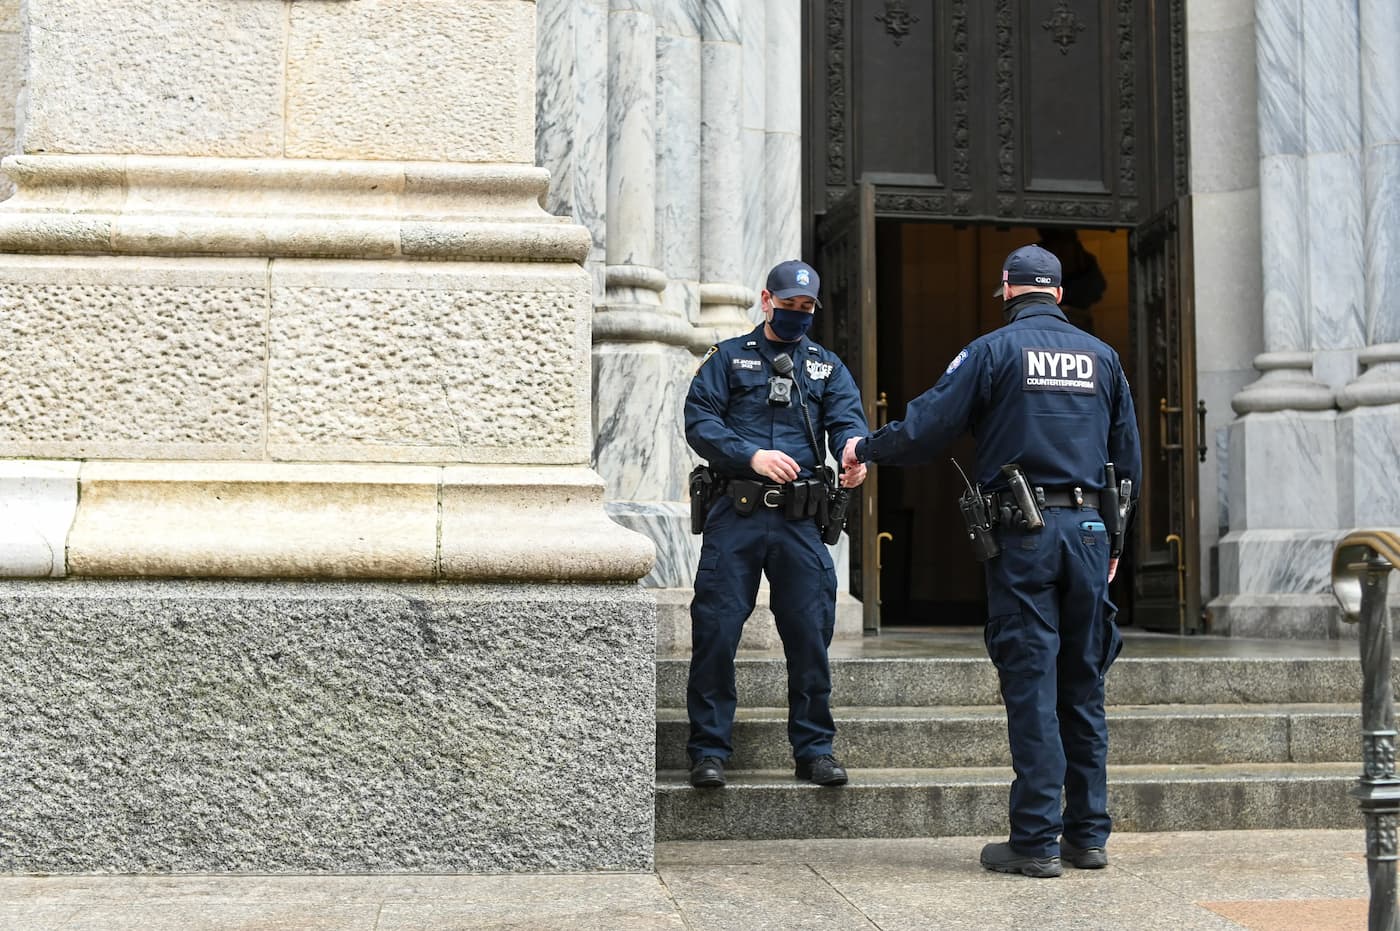 تصویری از دو نیروی پلیس مقابل یک ساختمان